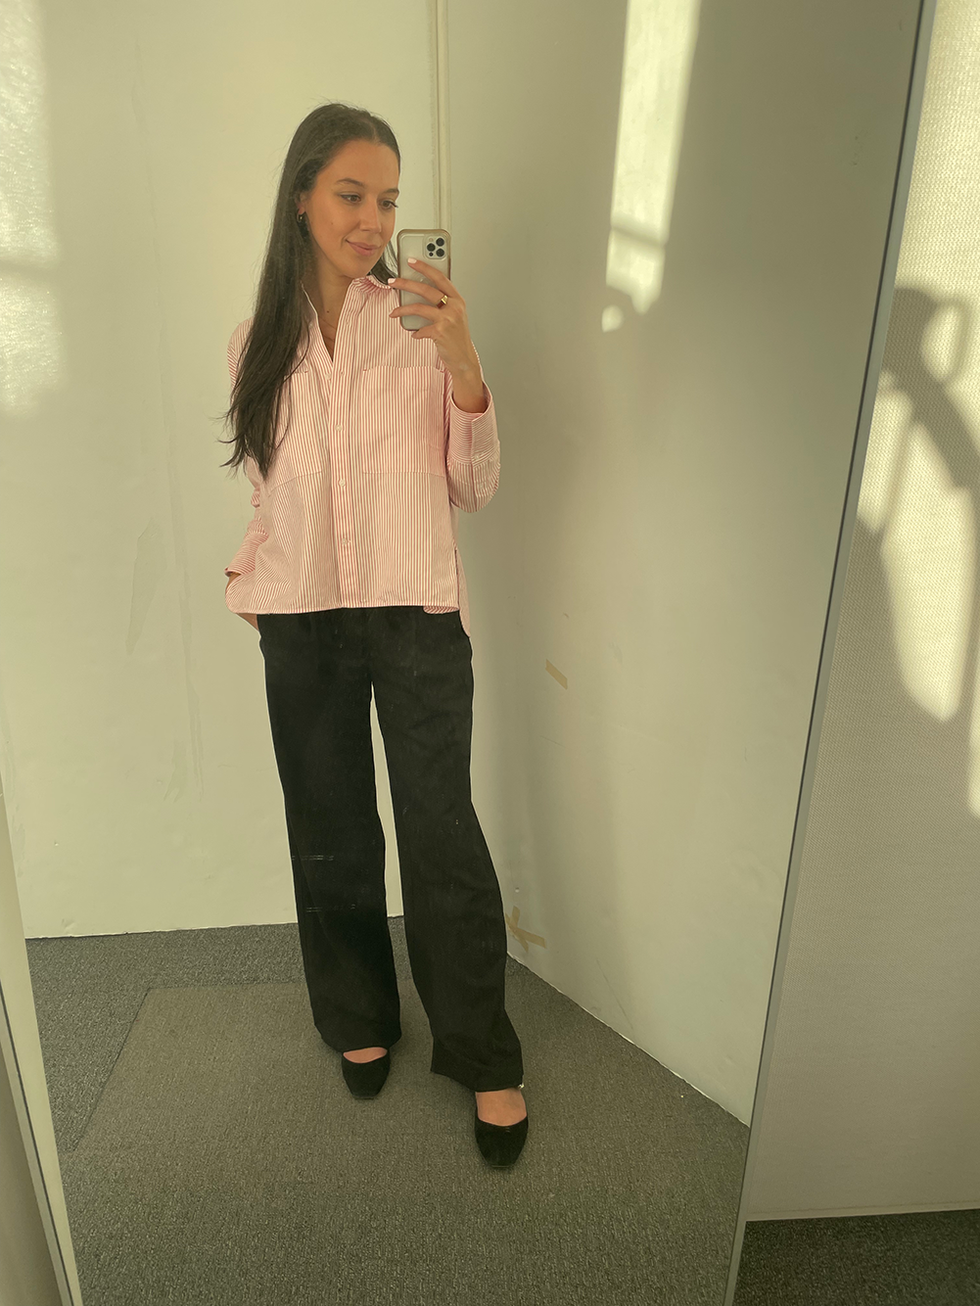 fashion editor jaclyn alexandra cohen wears everlane pants in a mirror selfie